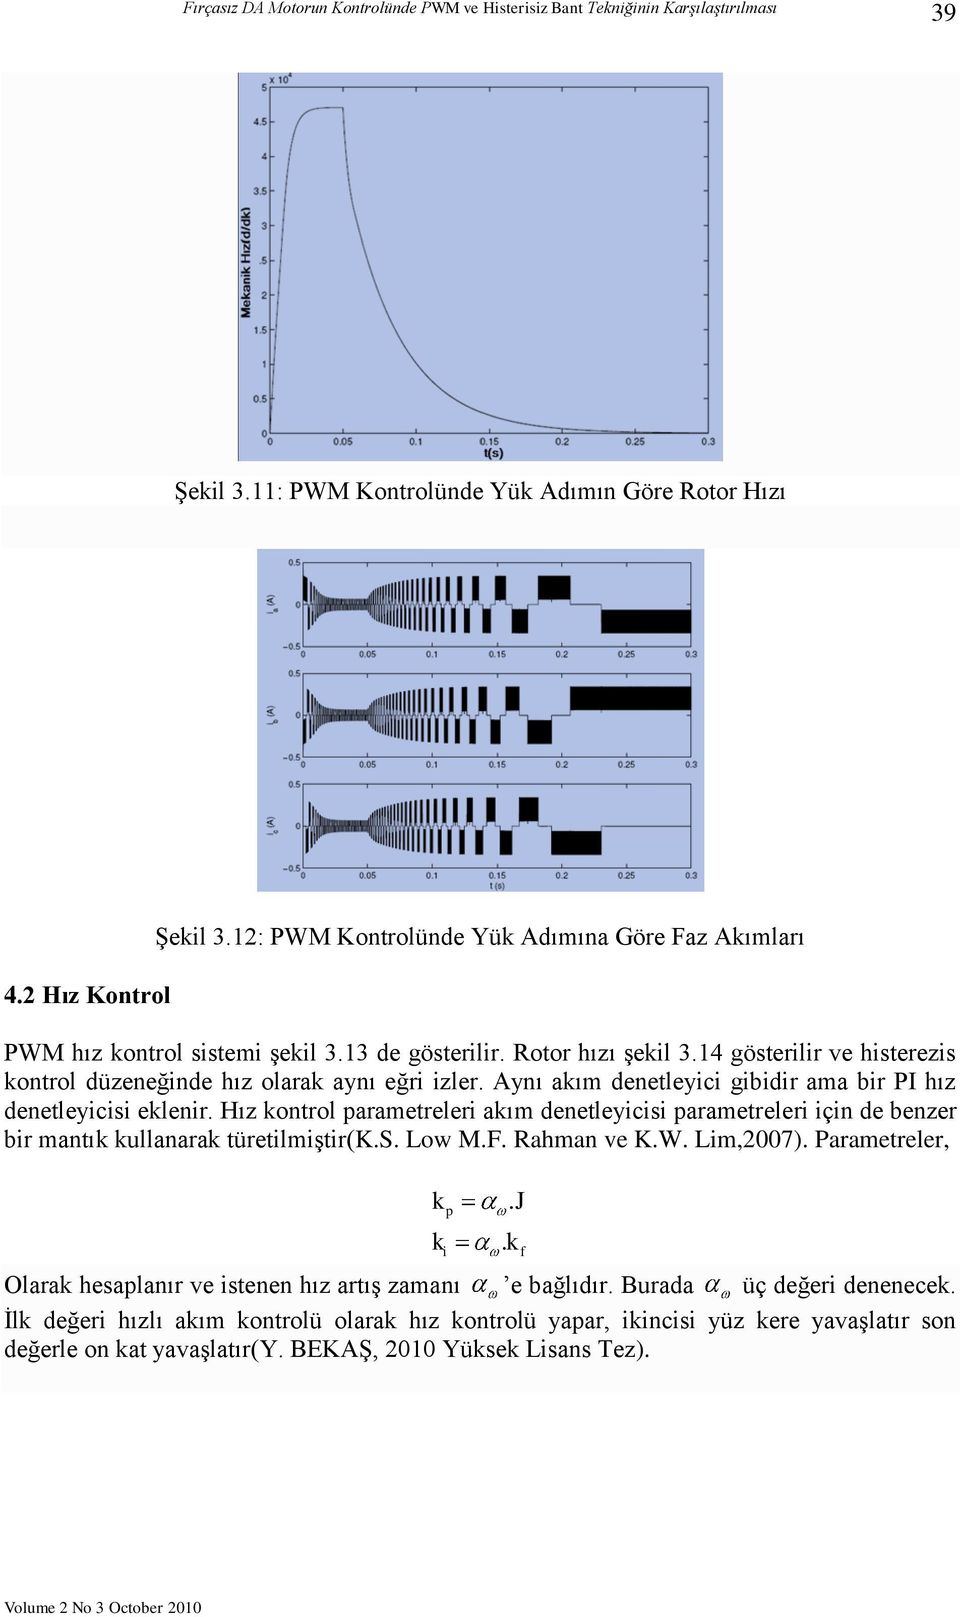 Hız kontrol parametreleri akım denetleyicisi parametreleri için de benzer bir mantık kullanarak türetilmiştir(k.s. Low M.F. Rahman ve K.W. Lim,2007).